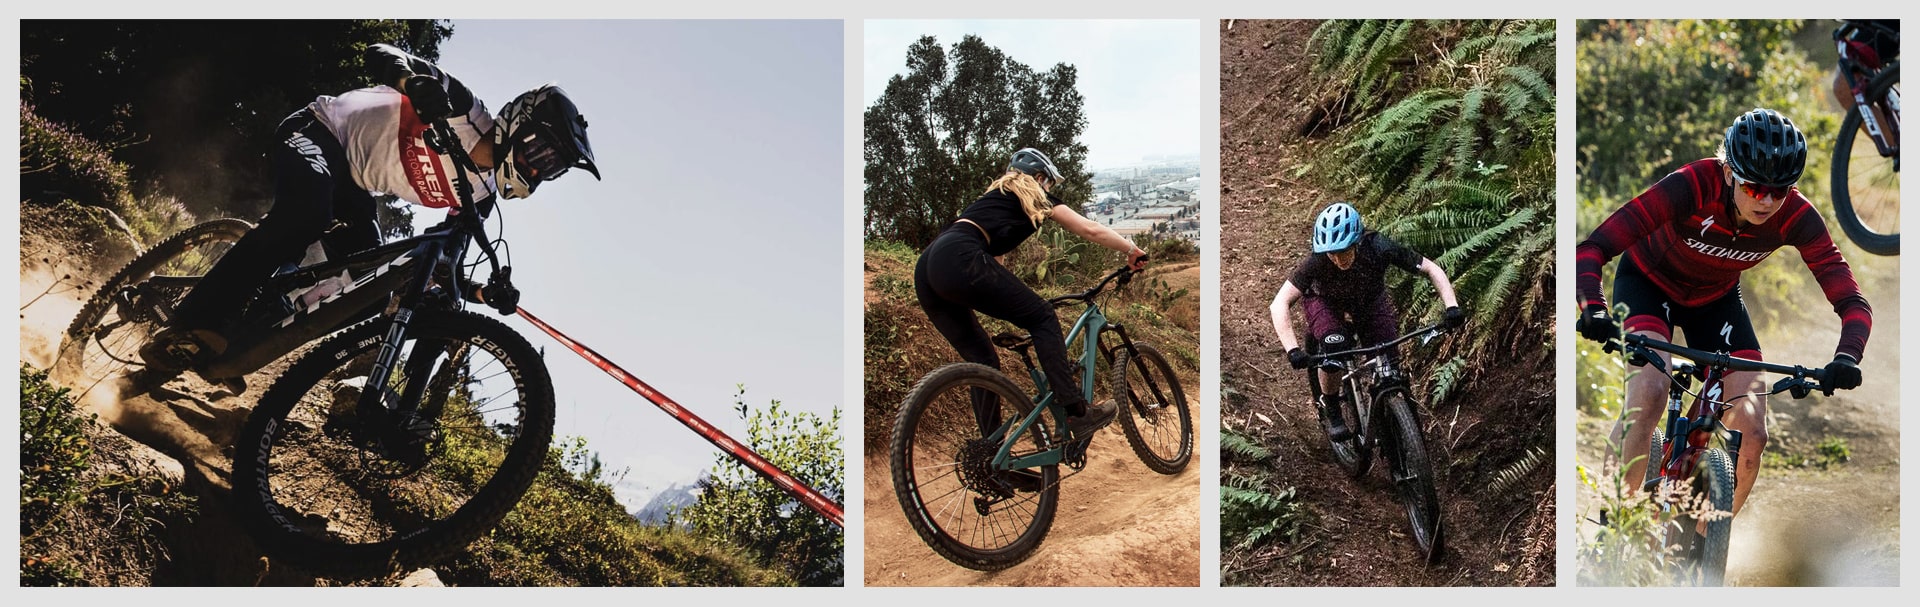 Immagine composta da varie foto di ciclisti in mountain bike